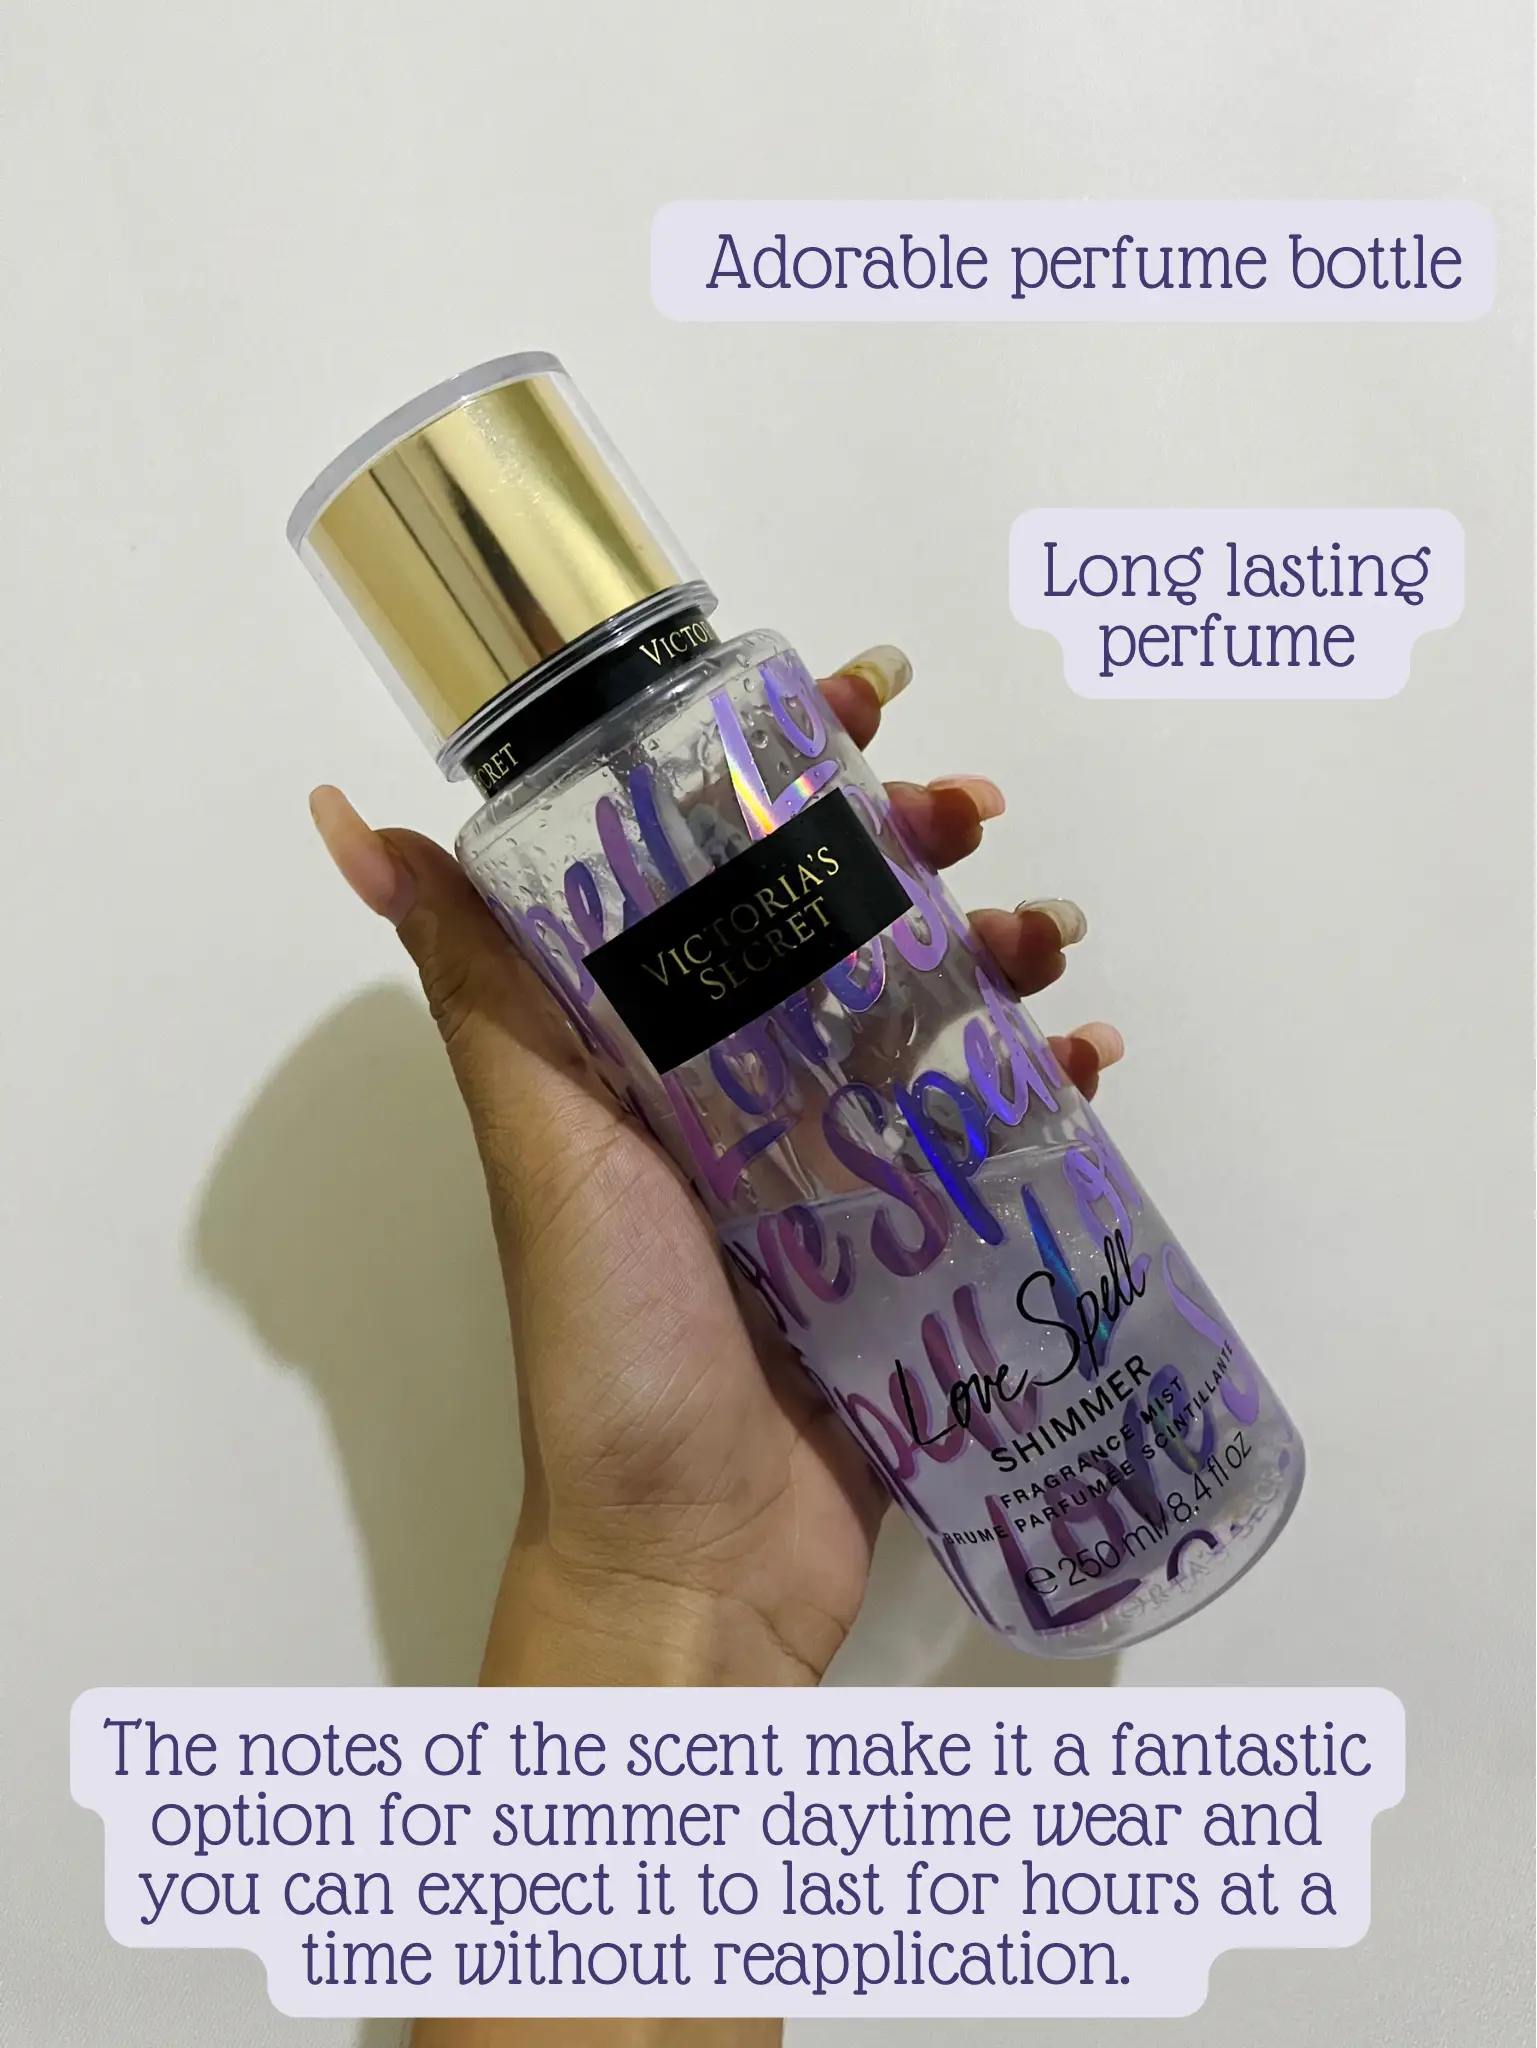 Love Spell - Perfume Oil